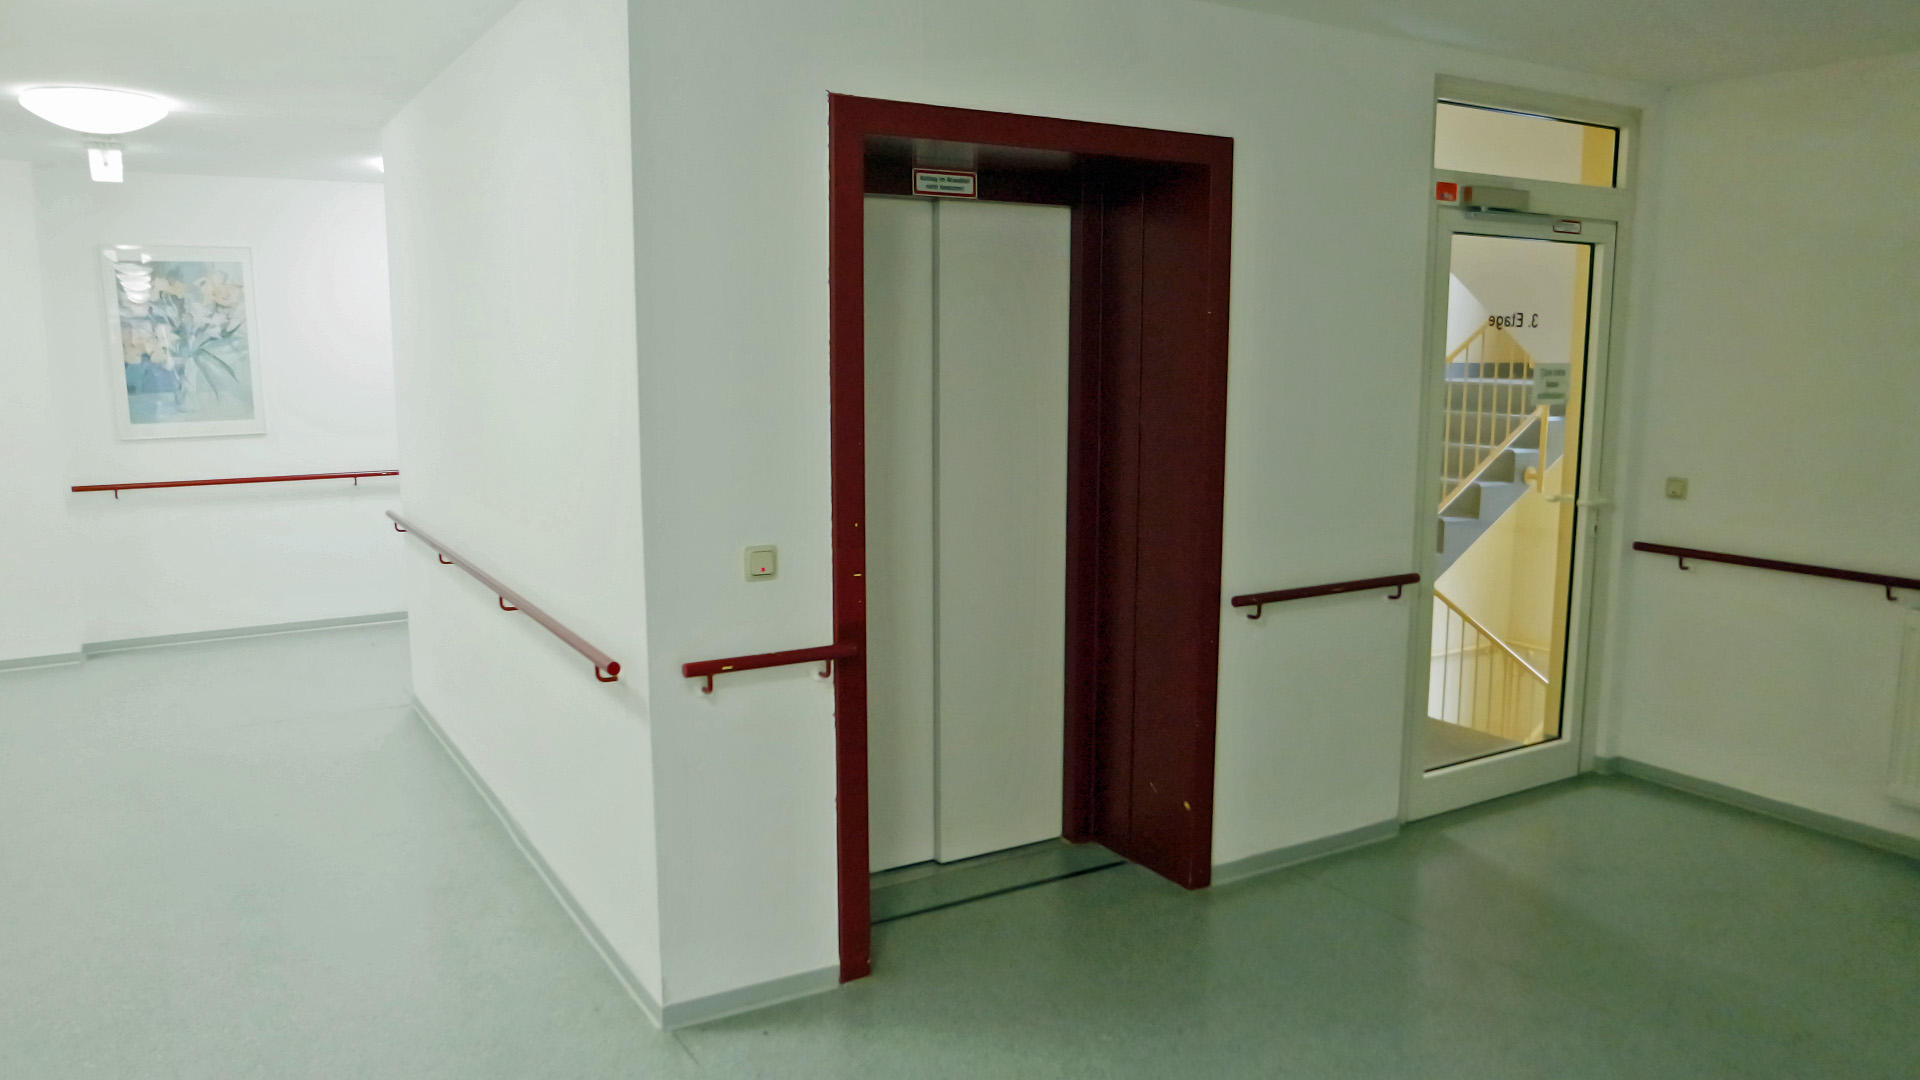 Gummersbach: Appartement in einer Seniorenresidenz, ...Aufzug-/Treppenanlage